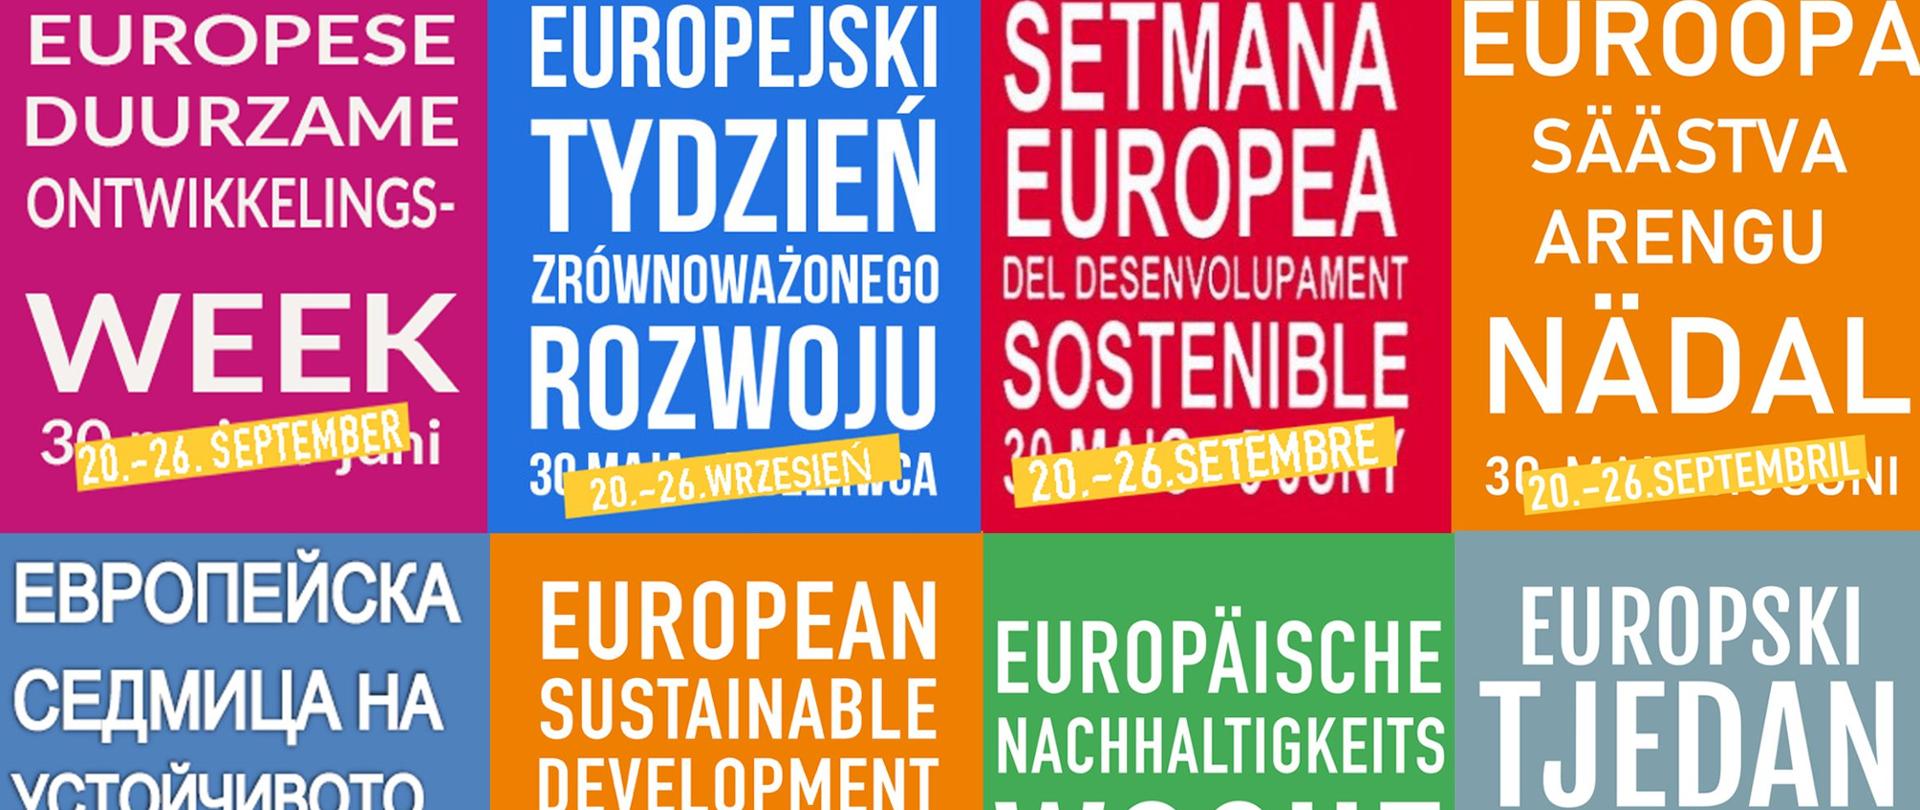 Logo Europejskiego Tygodnia Zrównoważonego Rozwoju we wszystkich językach unijnych na kolorowych tłach wraz z datą 20-26 września